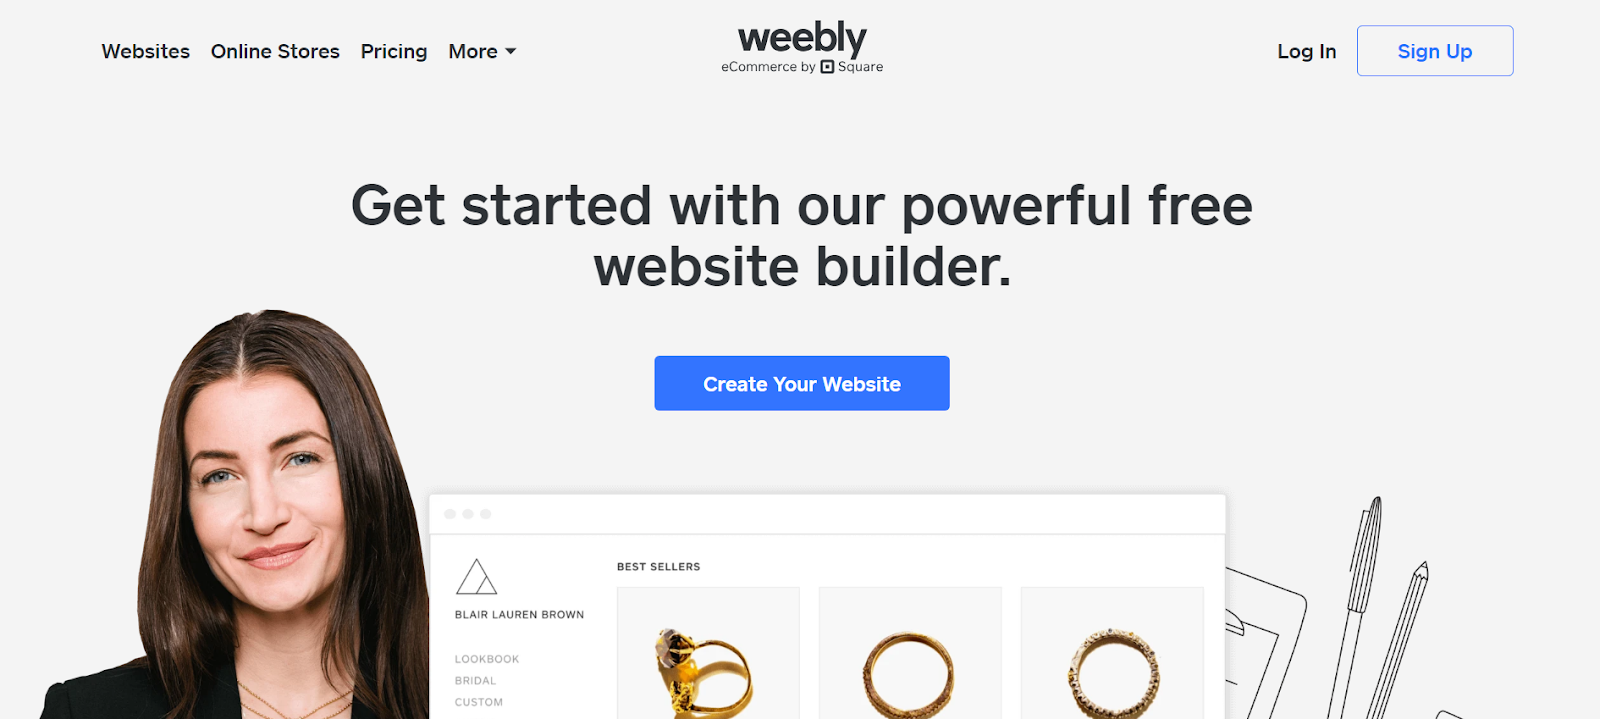 weebly website builder for kids